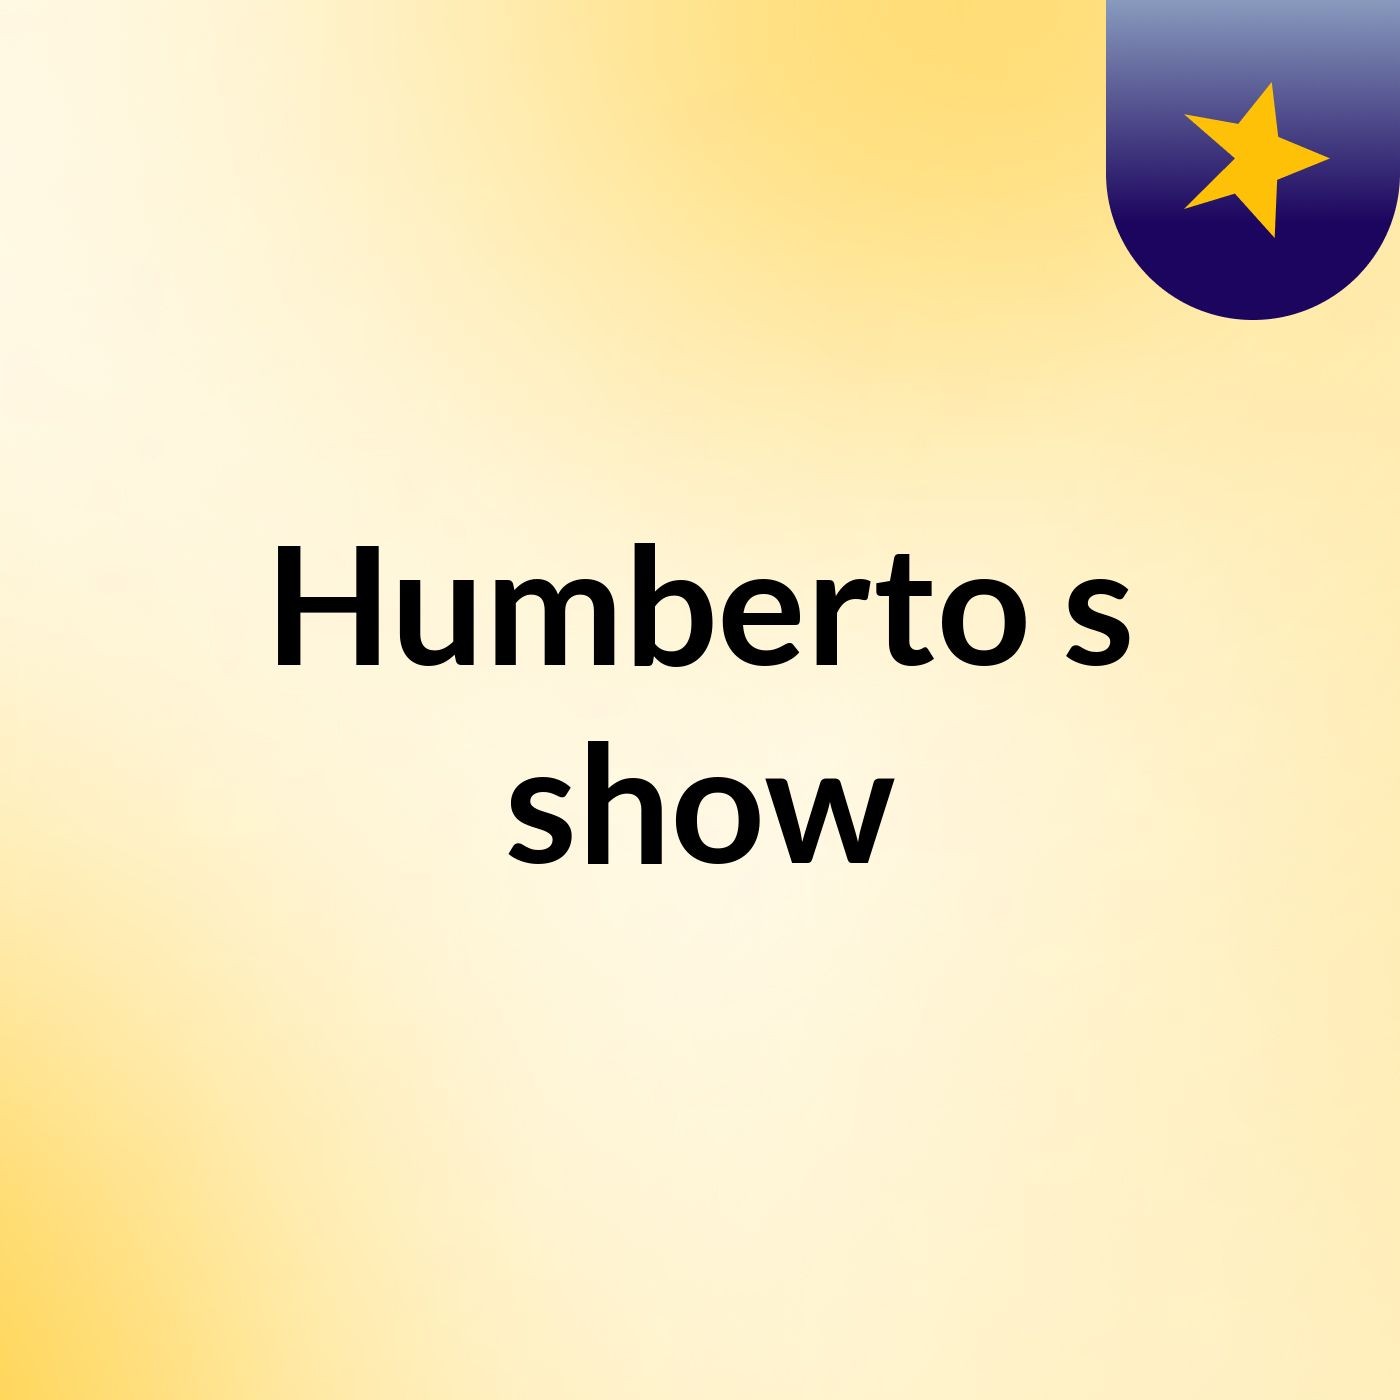 Humberto's show